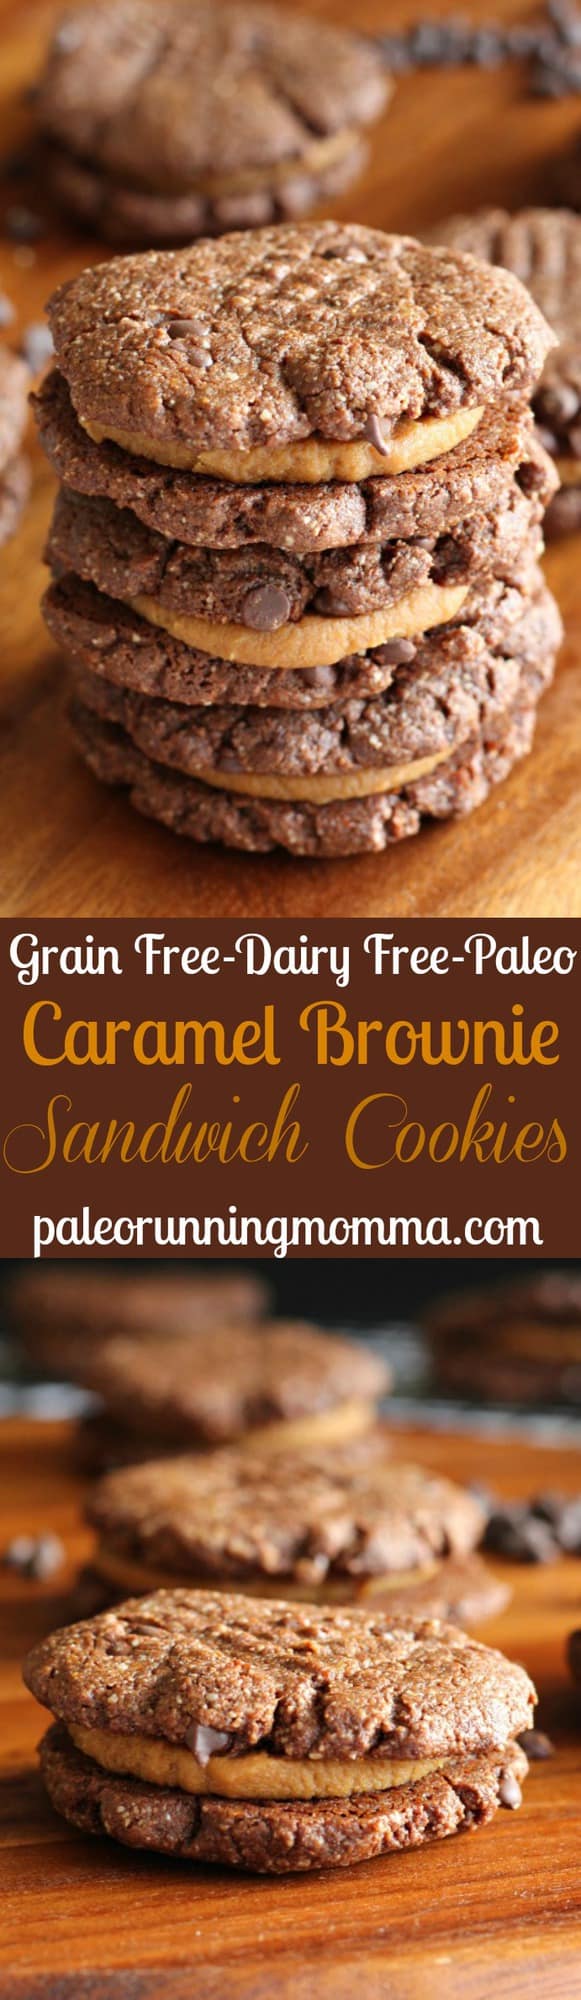 Chewy Caramel Brownie Sandwich Cookies - #grainfree #paleo #dairyfree #glutenfree #healthy